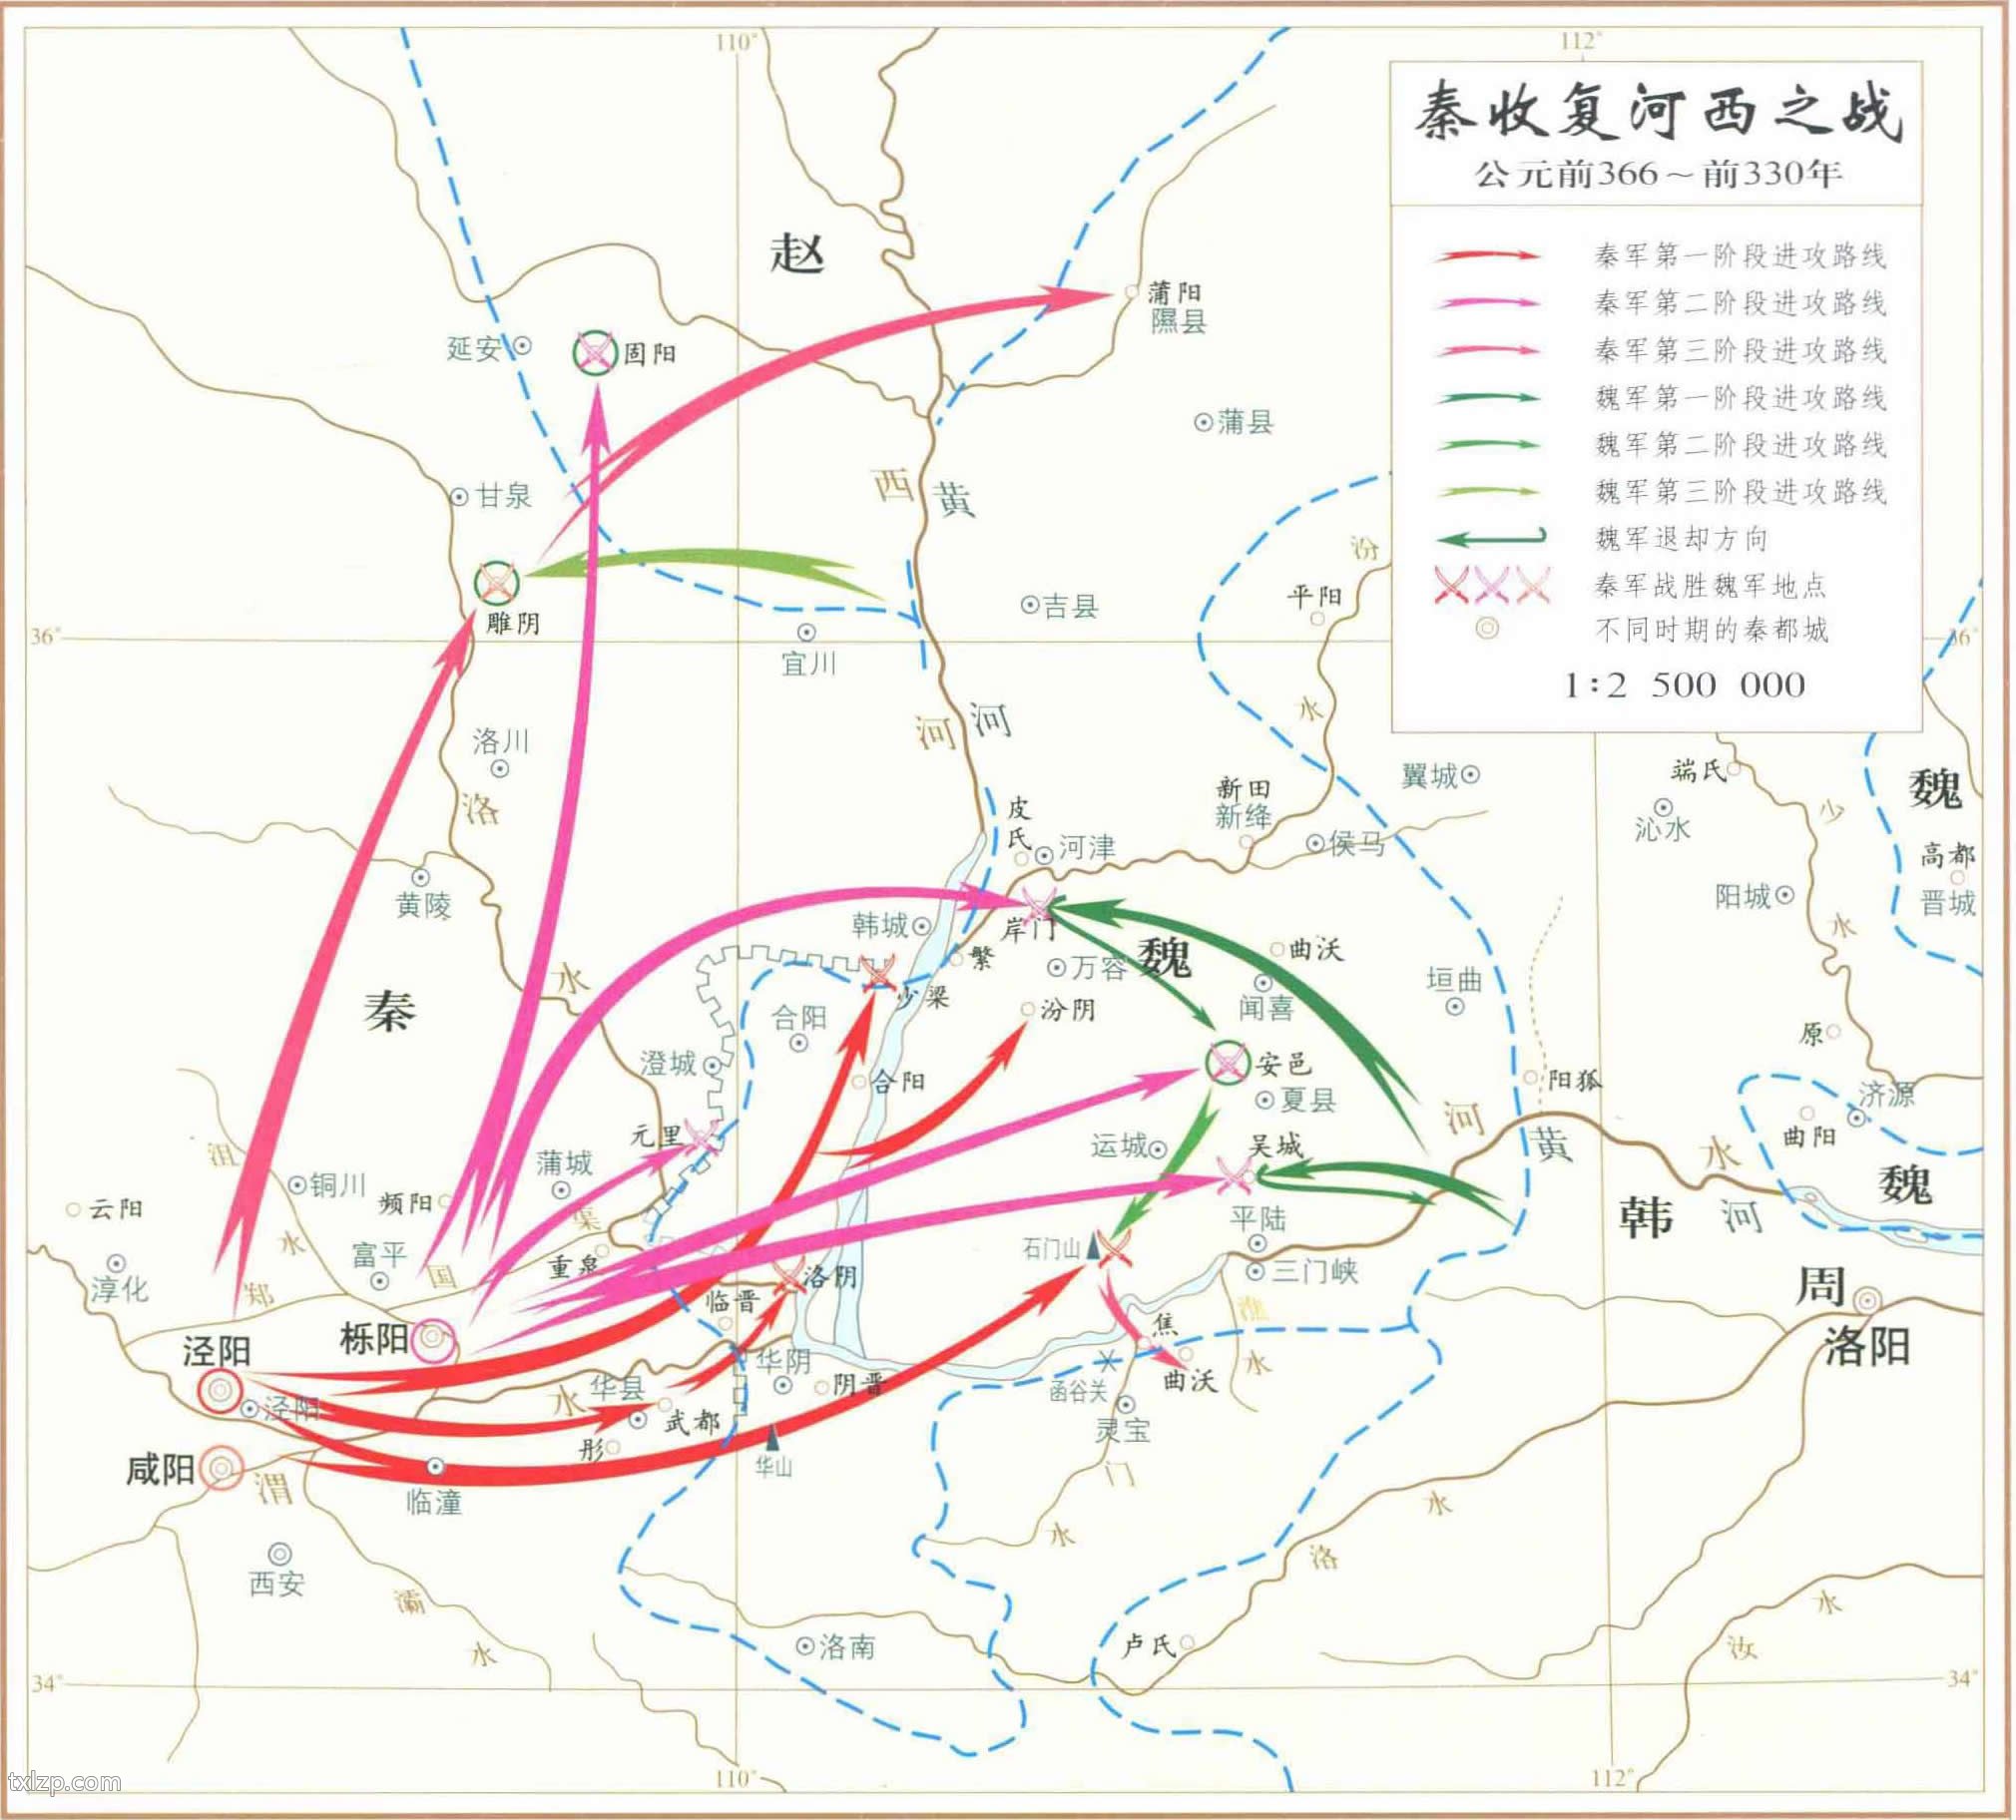 秦收复河西之战地图插图